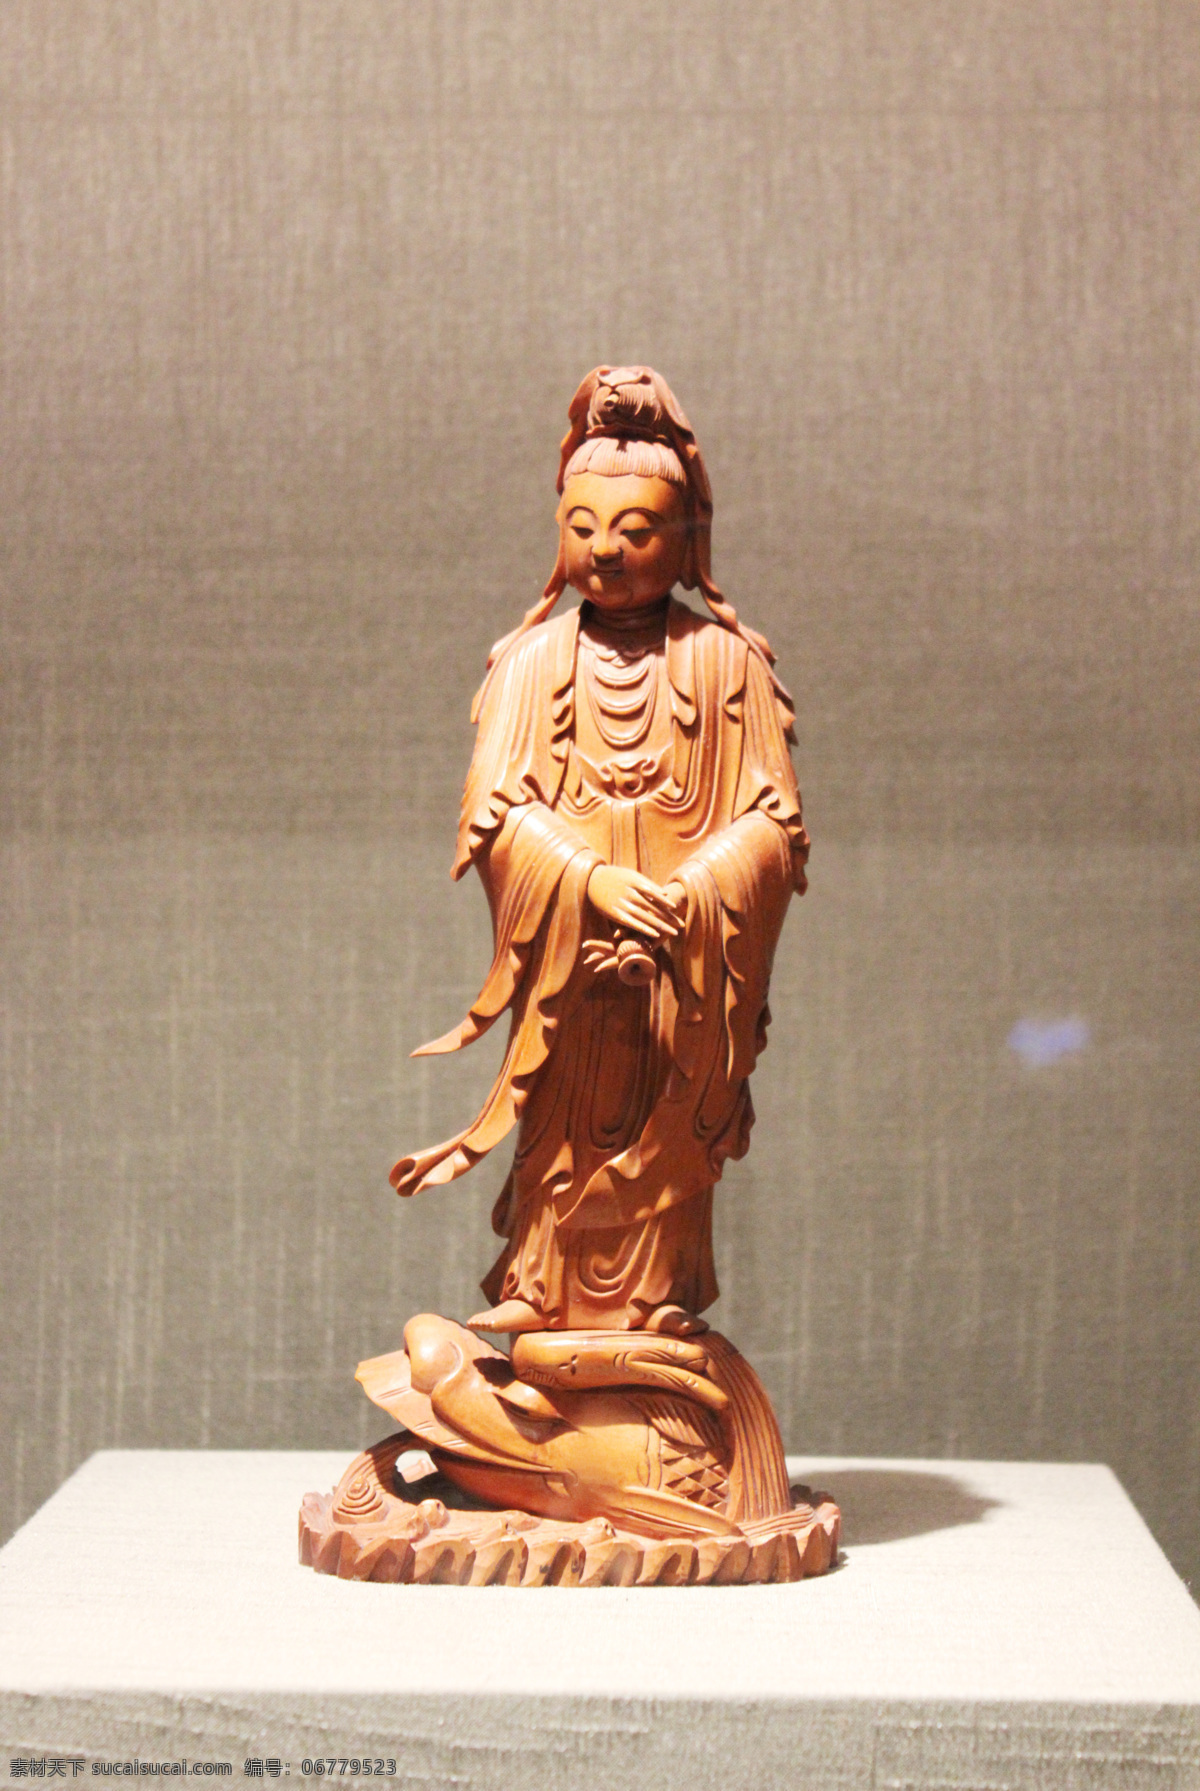 古董木雕菩萨 古董 瓷器 古典 艺术 传统 文化 中国风 木雕 菩萨 文化艺术 传统文化